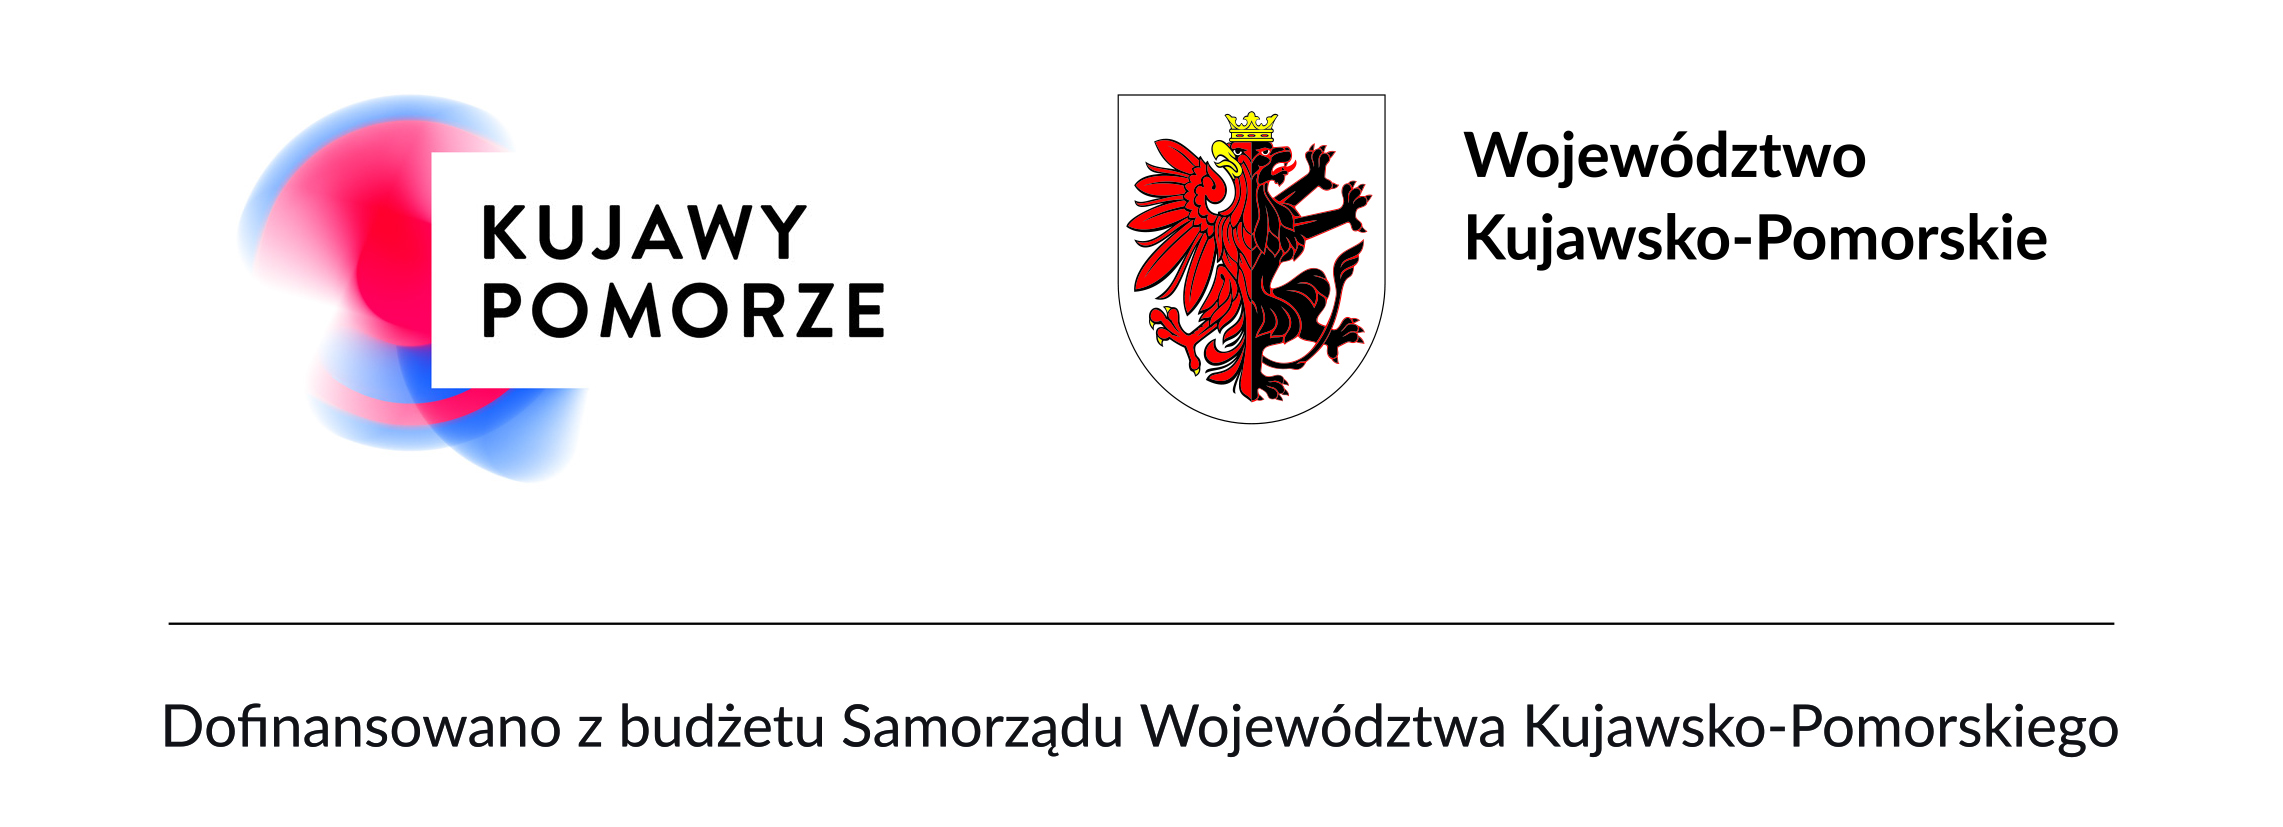 Logotyp Kujawy Pomorze, Logotyp Województwo Kujawsko-Pomorskie, zapis Dofinansowano z budżetu Województwa Kujawsko-Pomorskiego